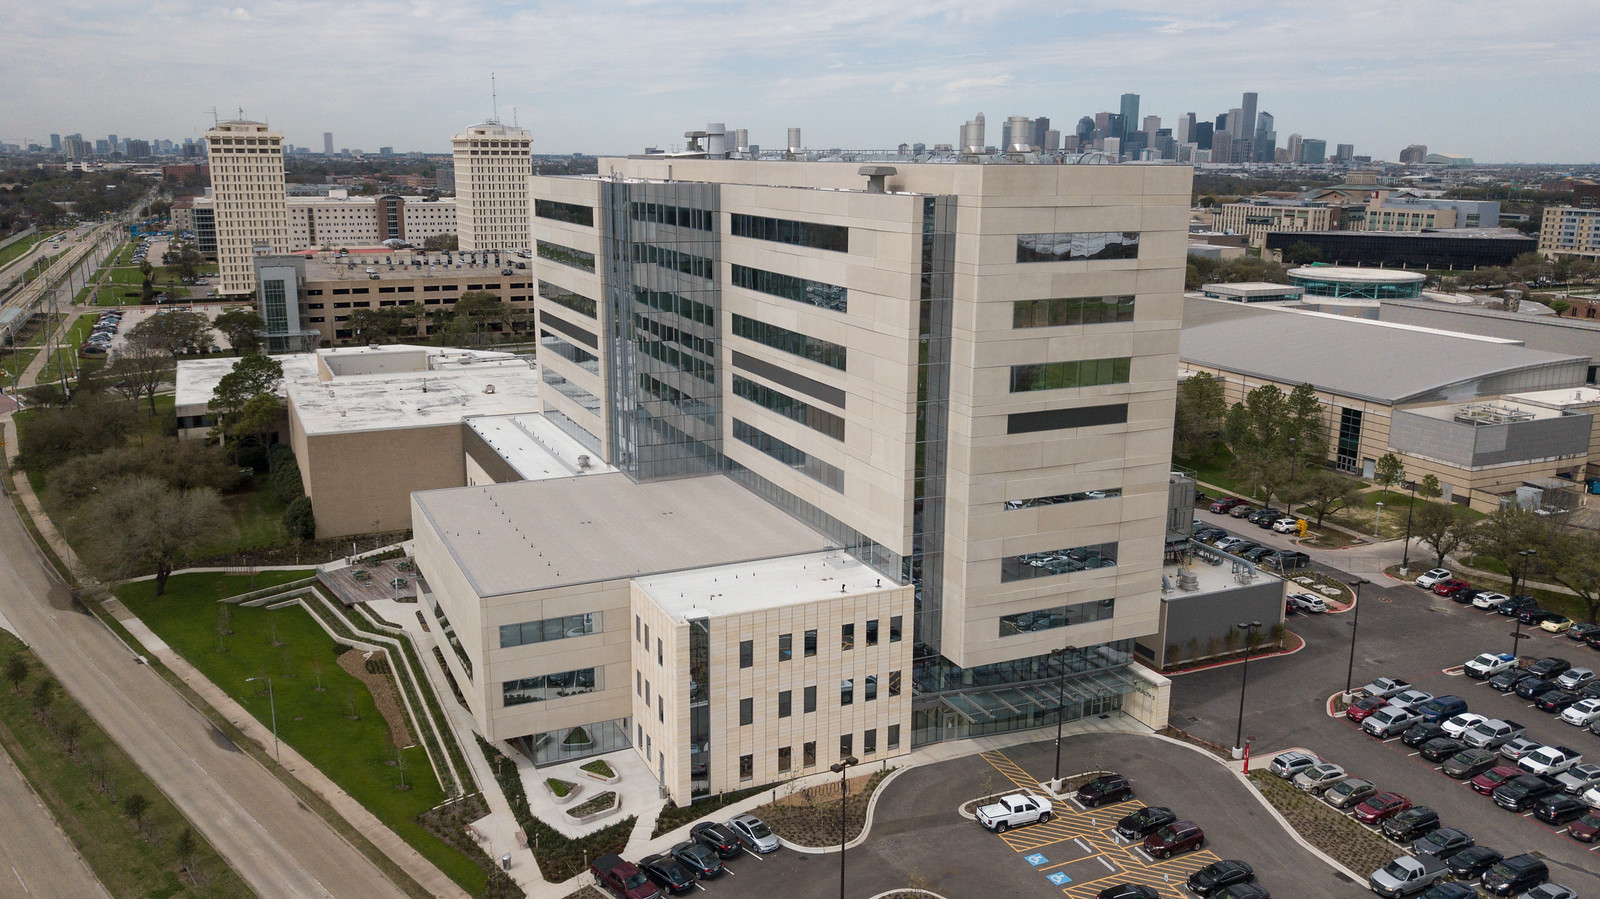 College of Medicine - University of Houston